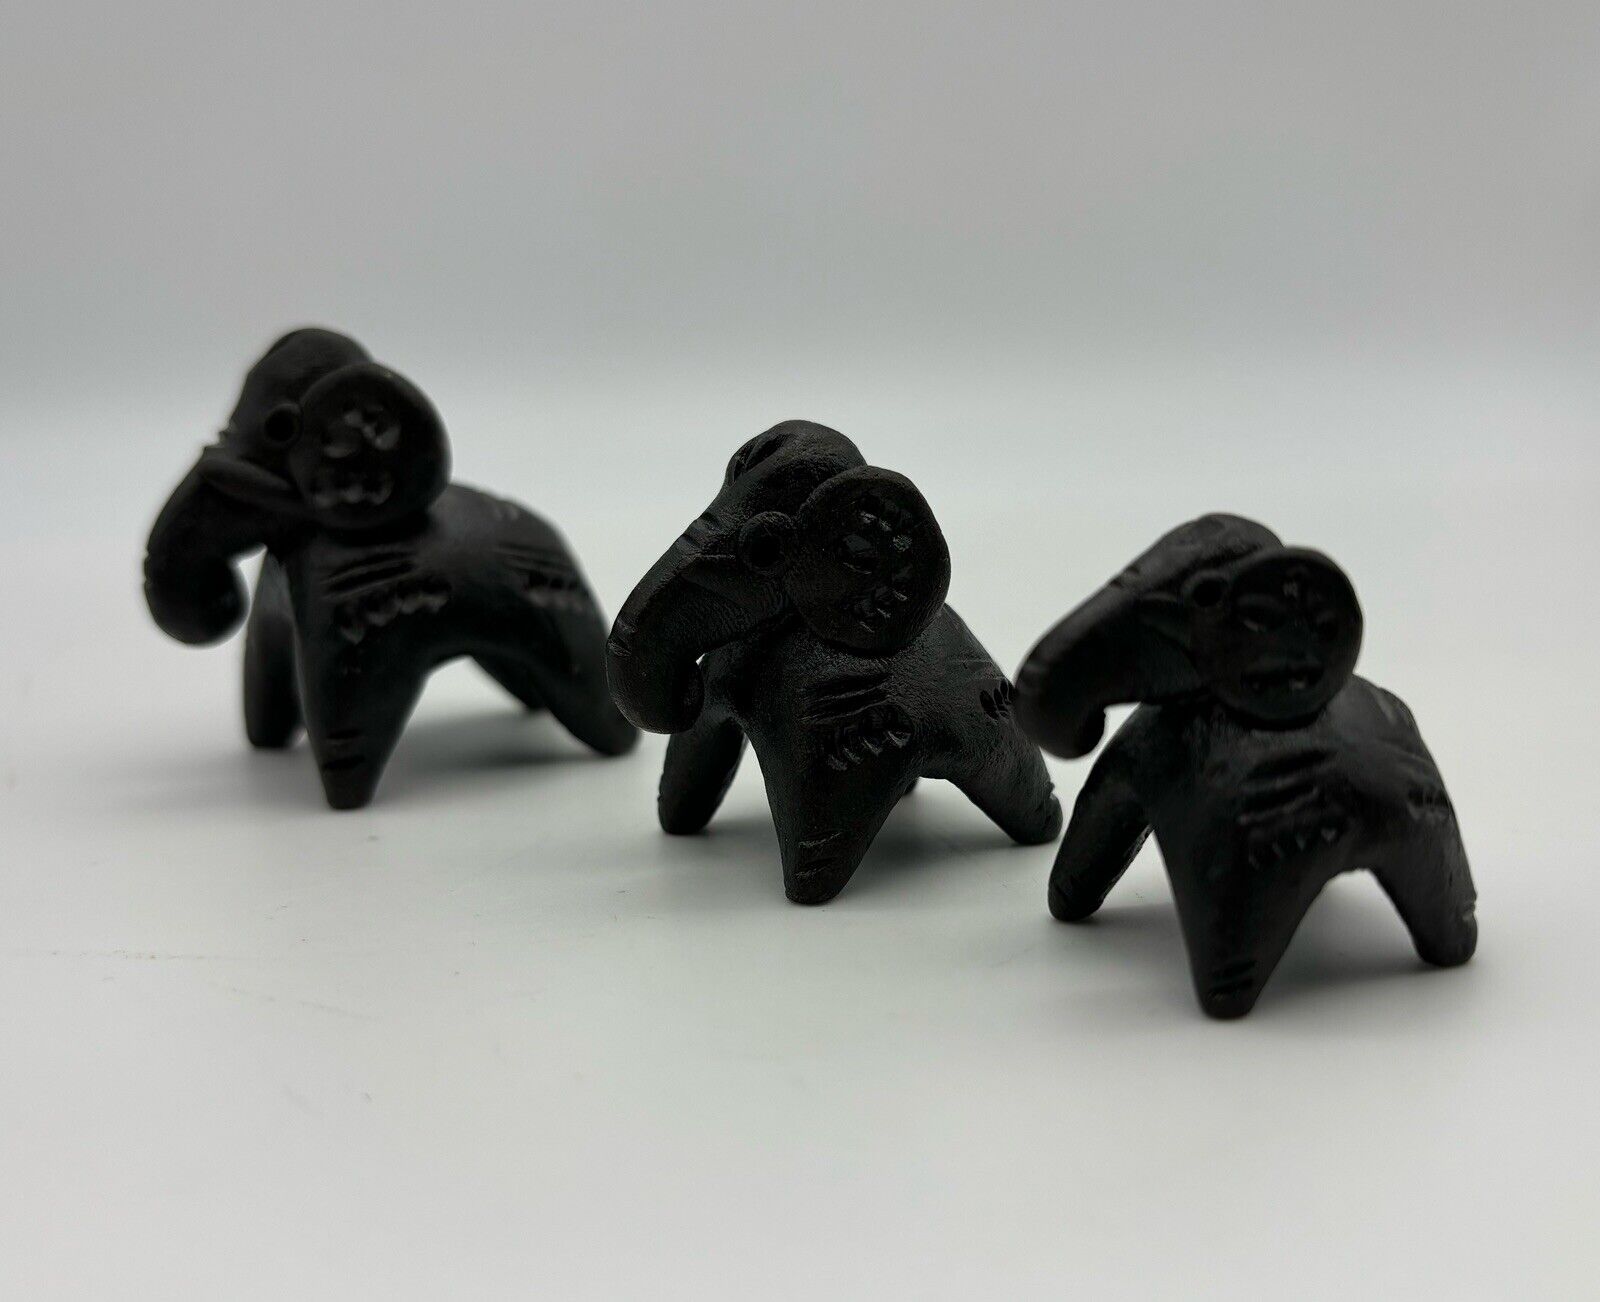 Oaxaca Black Mexican Pottery Set Mini Elephant Family Figurines Folk Art 1.5”